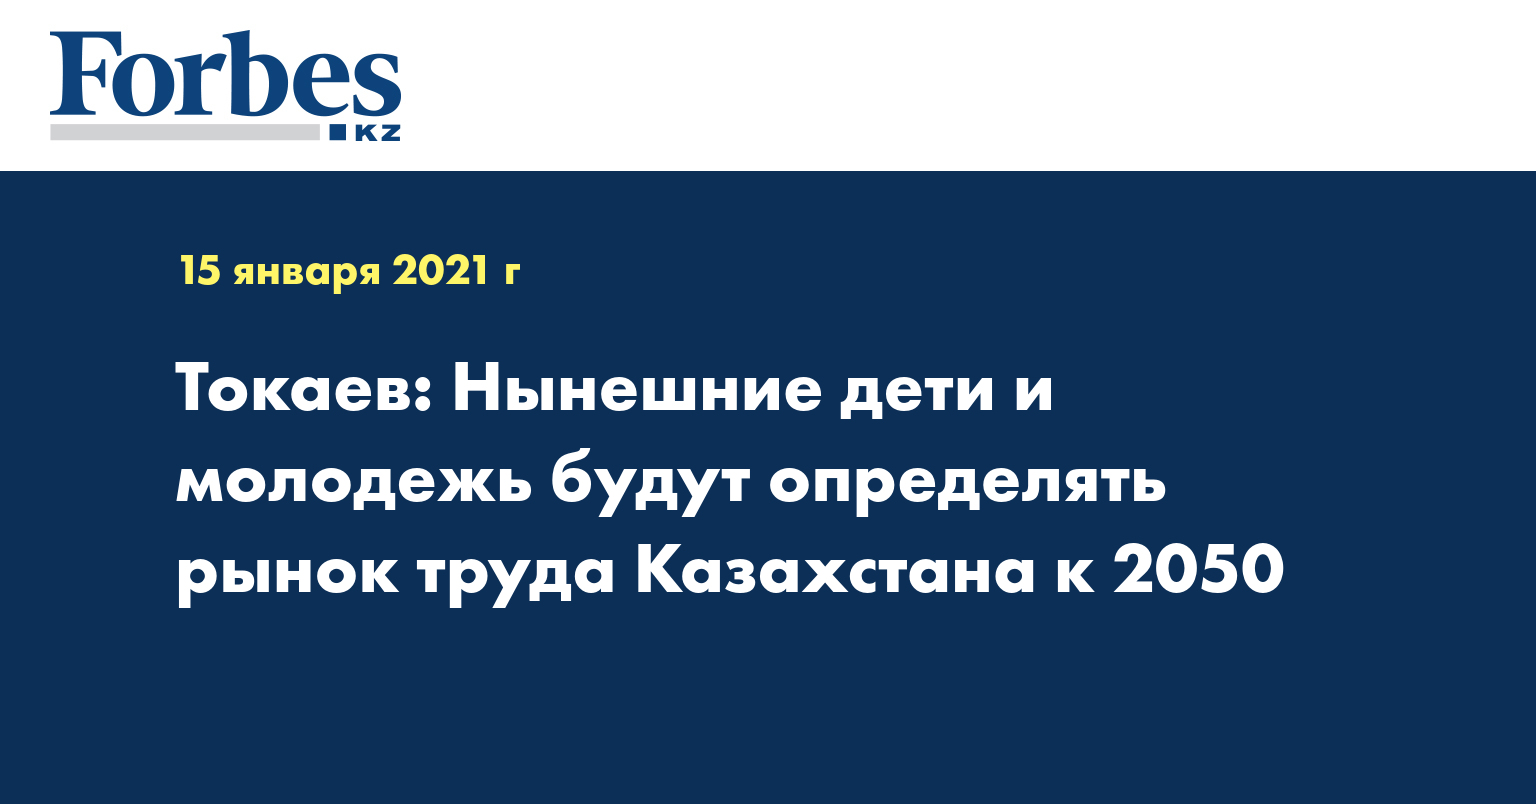 Токаев: Нынешние дети и молодежь будут определять рынок труда Казахстана к 2050 